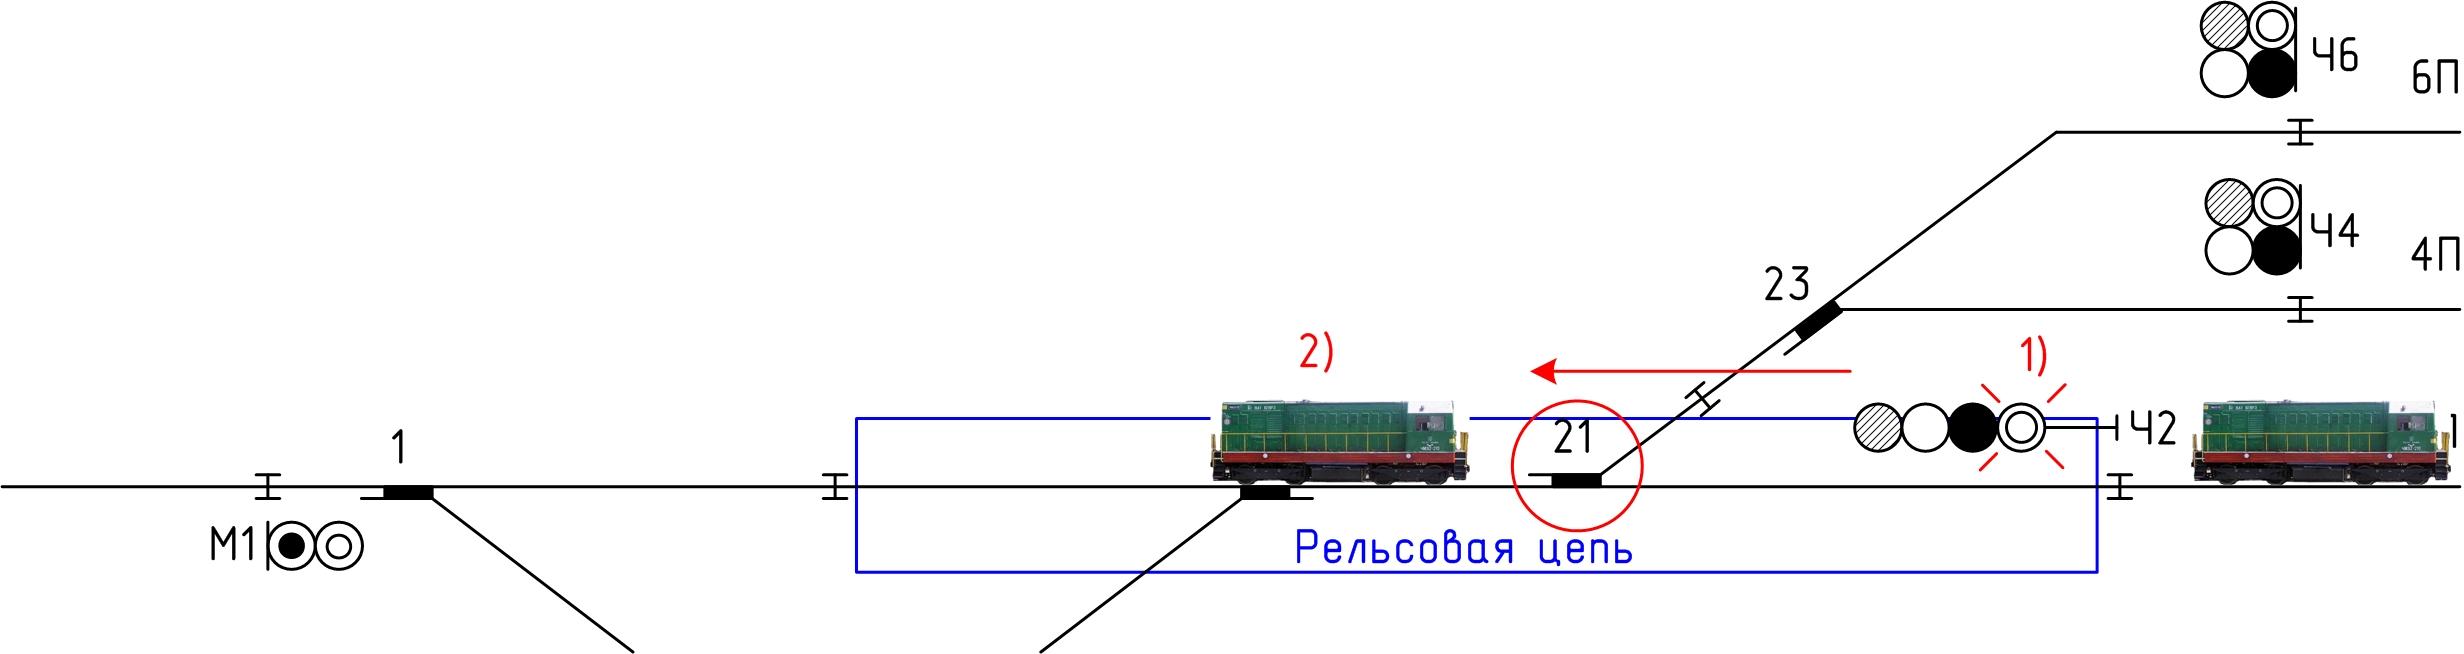 Внимание поезд четный. Однониточная схема станции 7 путей. Схема двухниточный рельсовой цепи. Двухниточная рельсовая цепь схема. Схема однониточной рельсовой цепи.